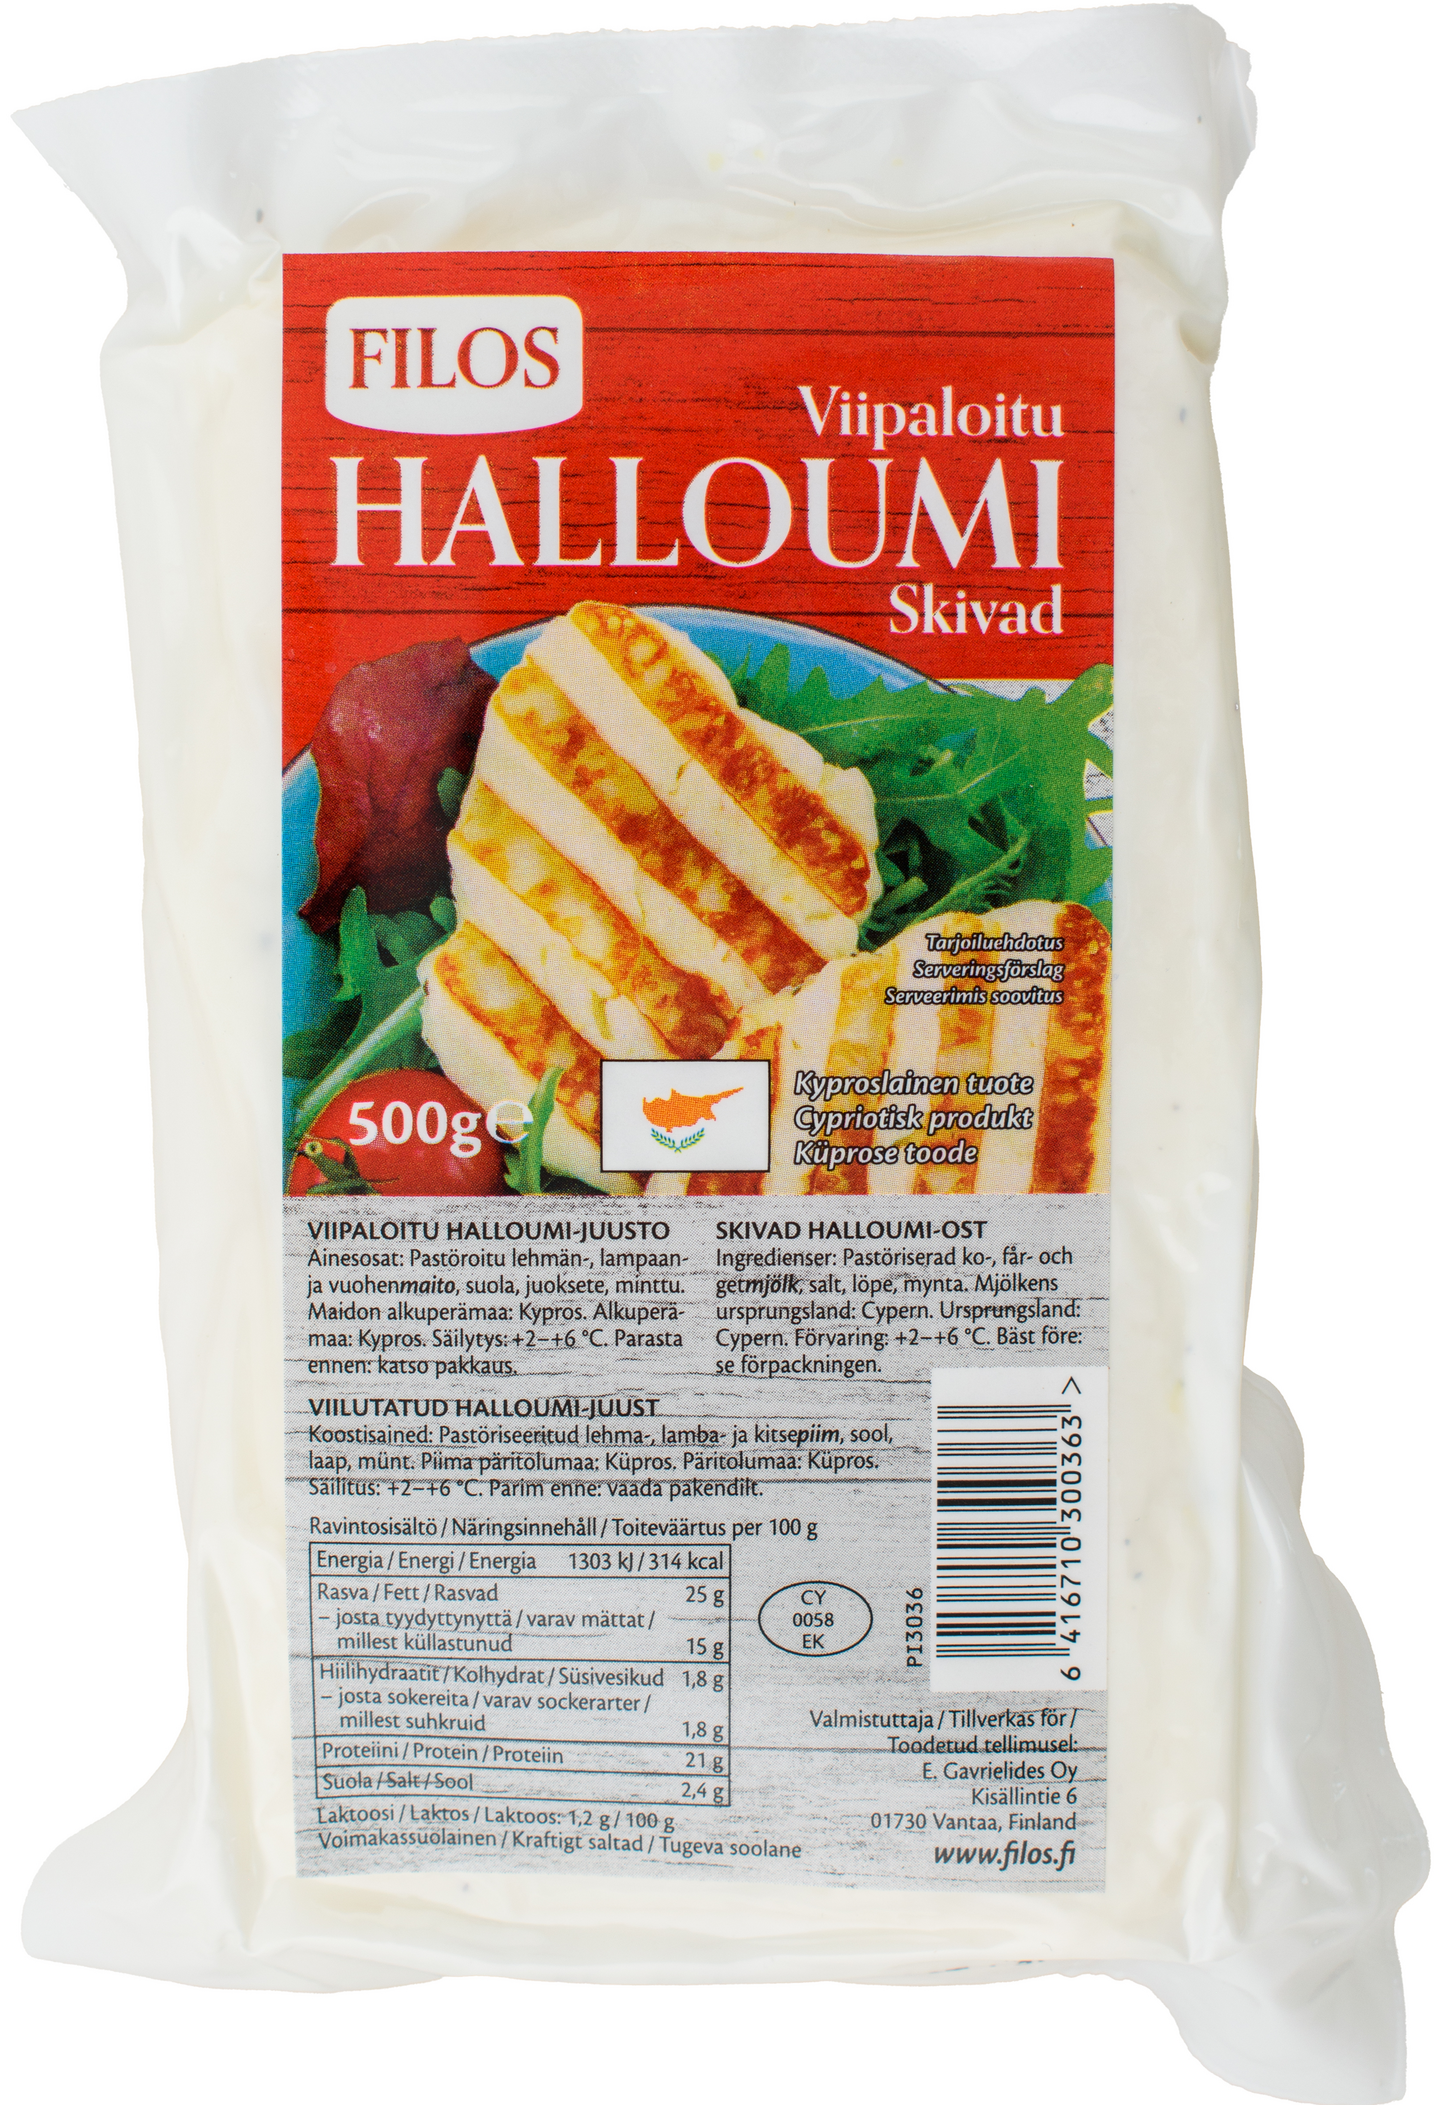 Filos viipaloitu halloumi-juusto 500g